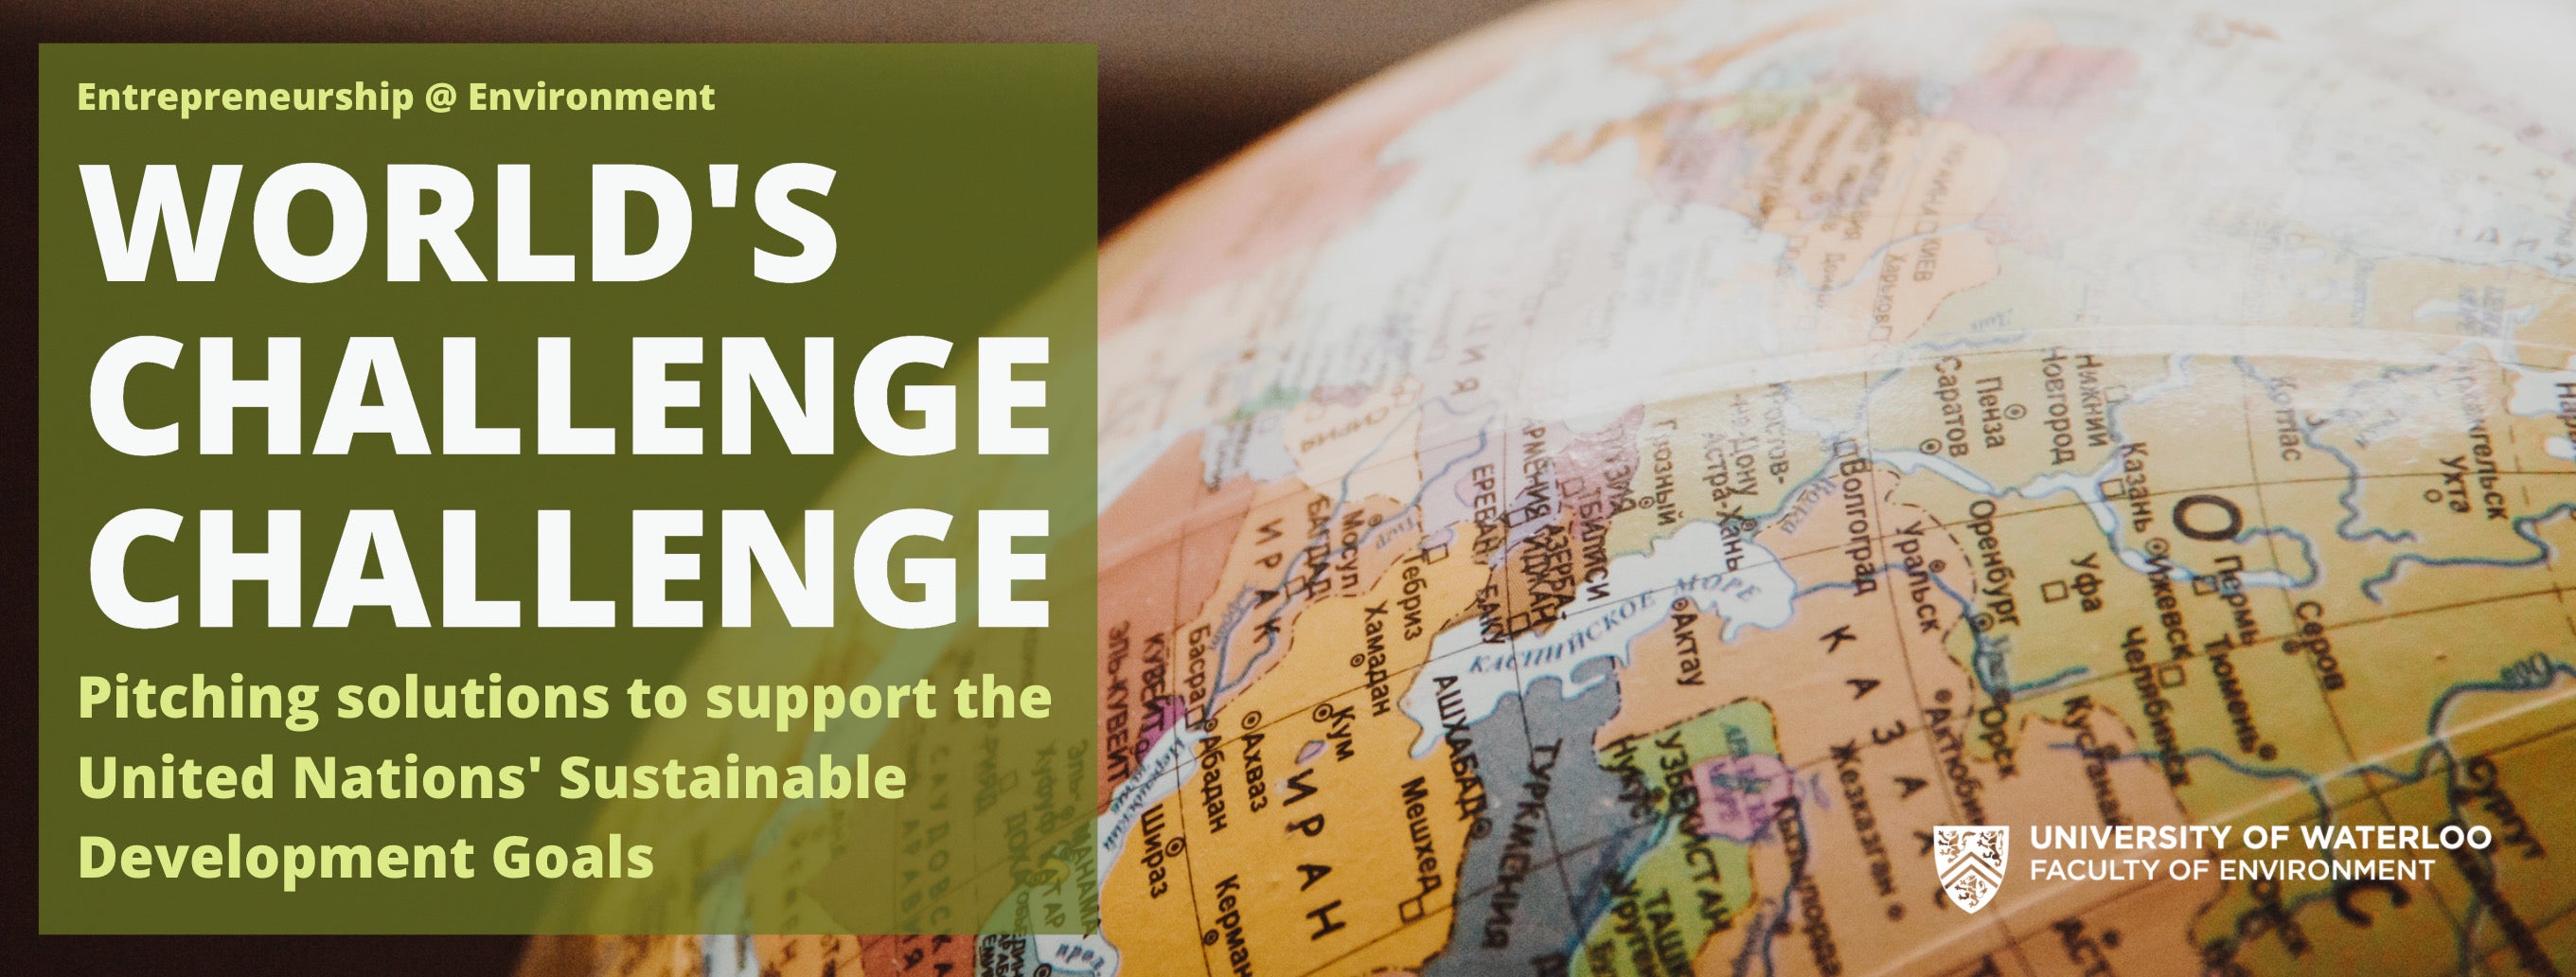 World's Challenge Challenge Banner